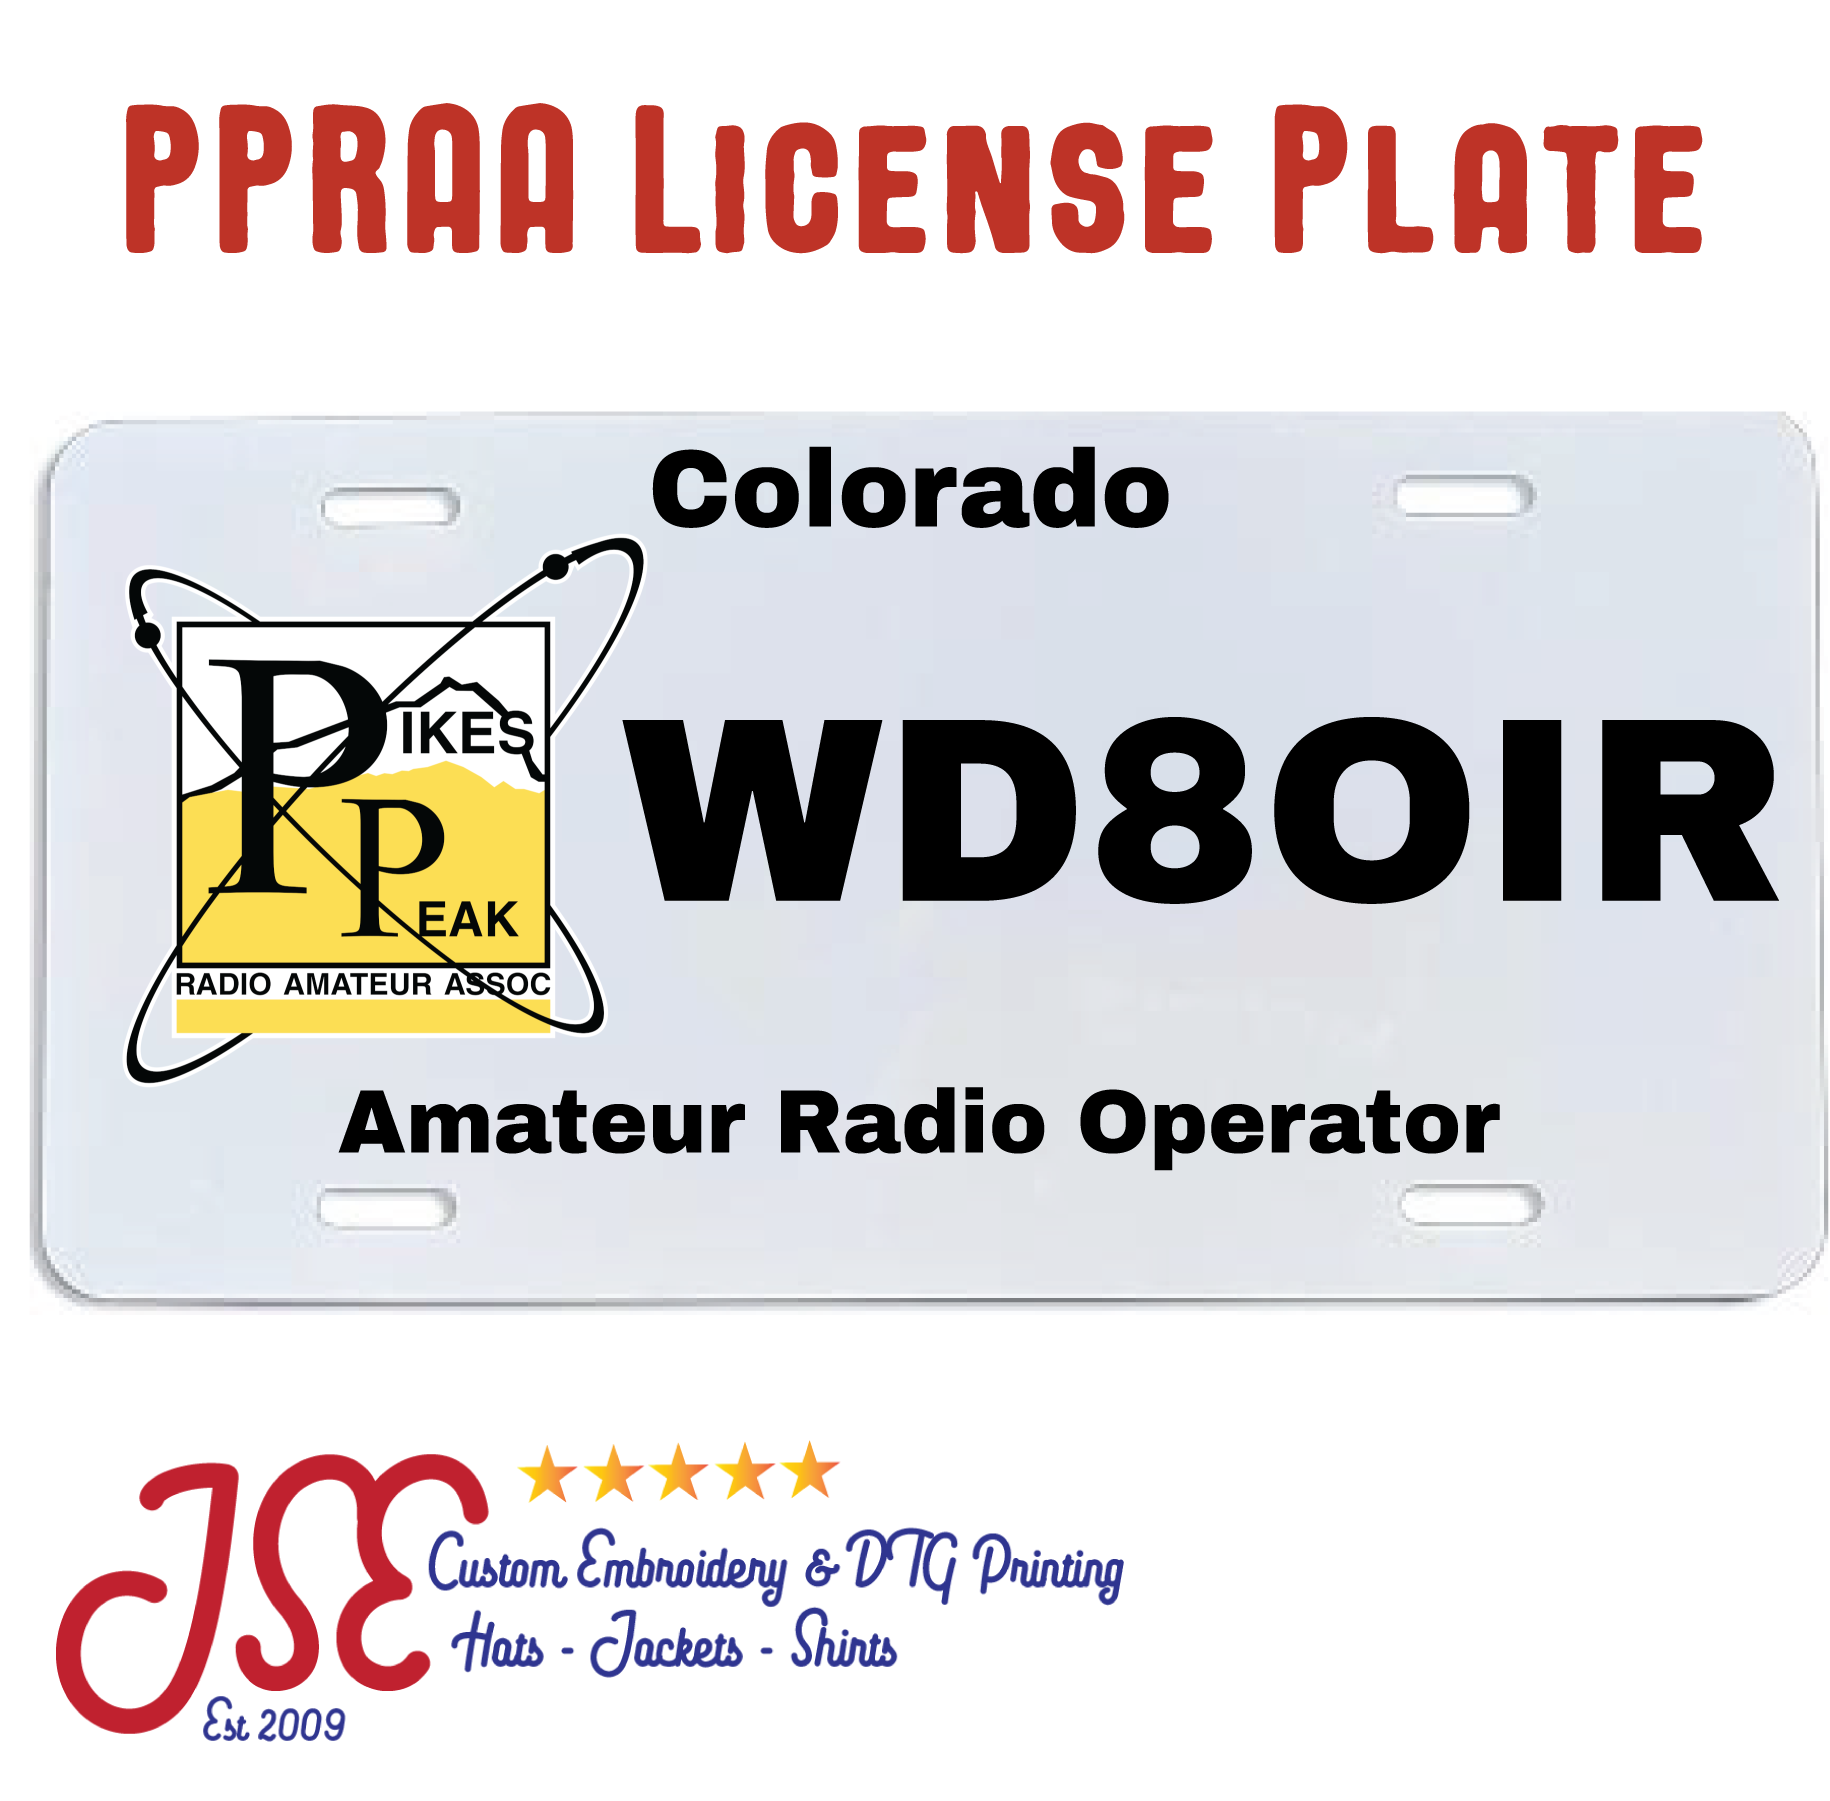 PPRAA-Pikes Peak Radio Amateur Association